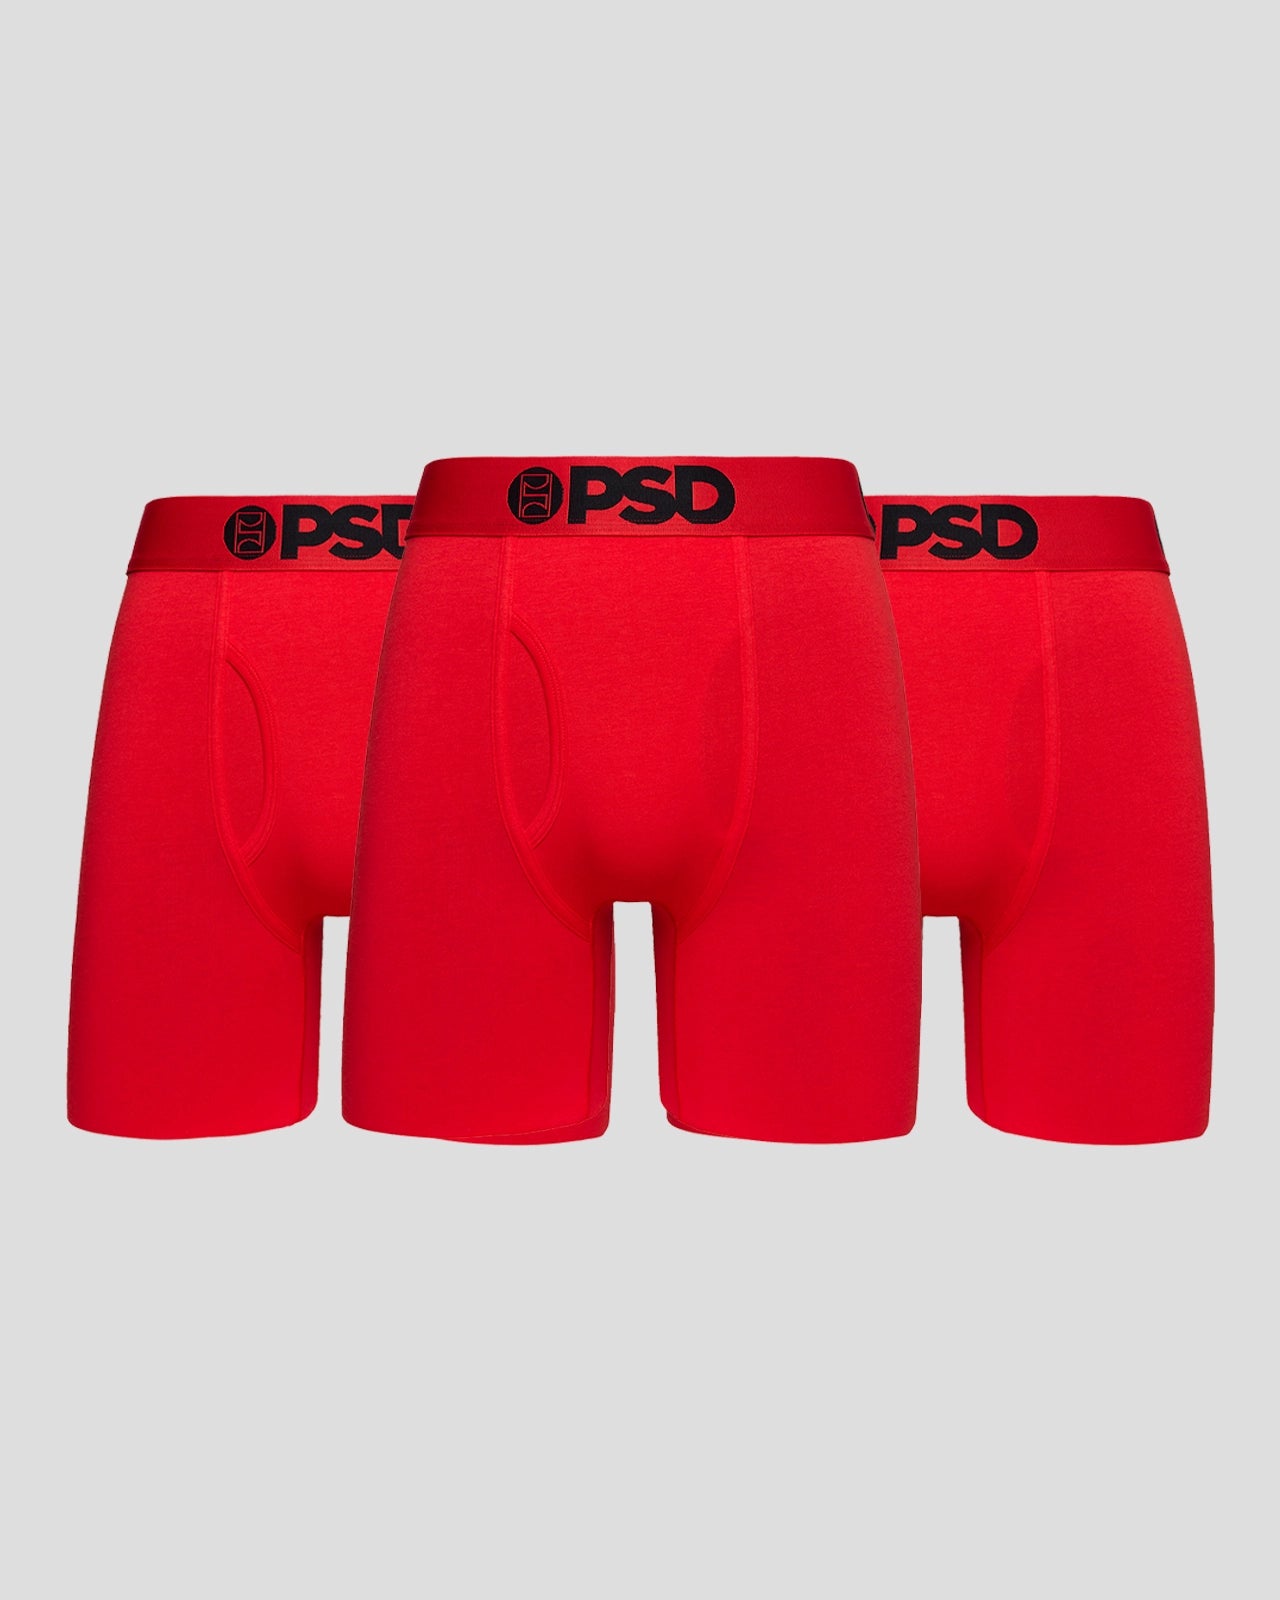 PSD Underwear Men's Boxer Briefs (Red/Infrared Money Mm/M), Red/Infrared  Money Mm, Medium : : Clothing, Shoes & Accessories